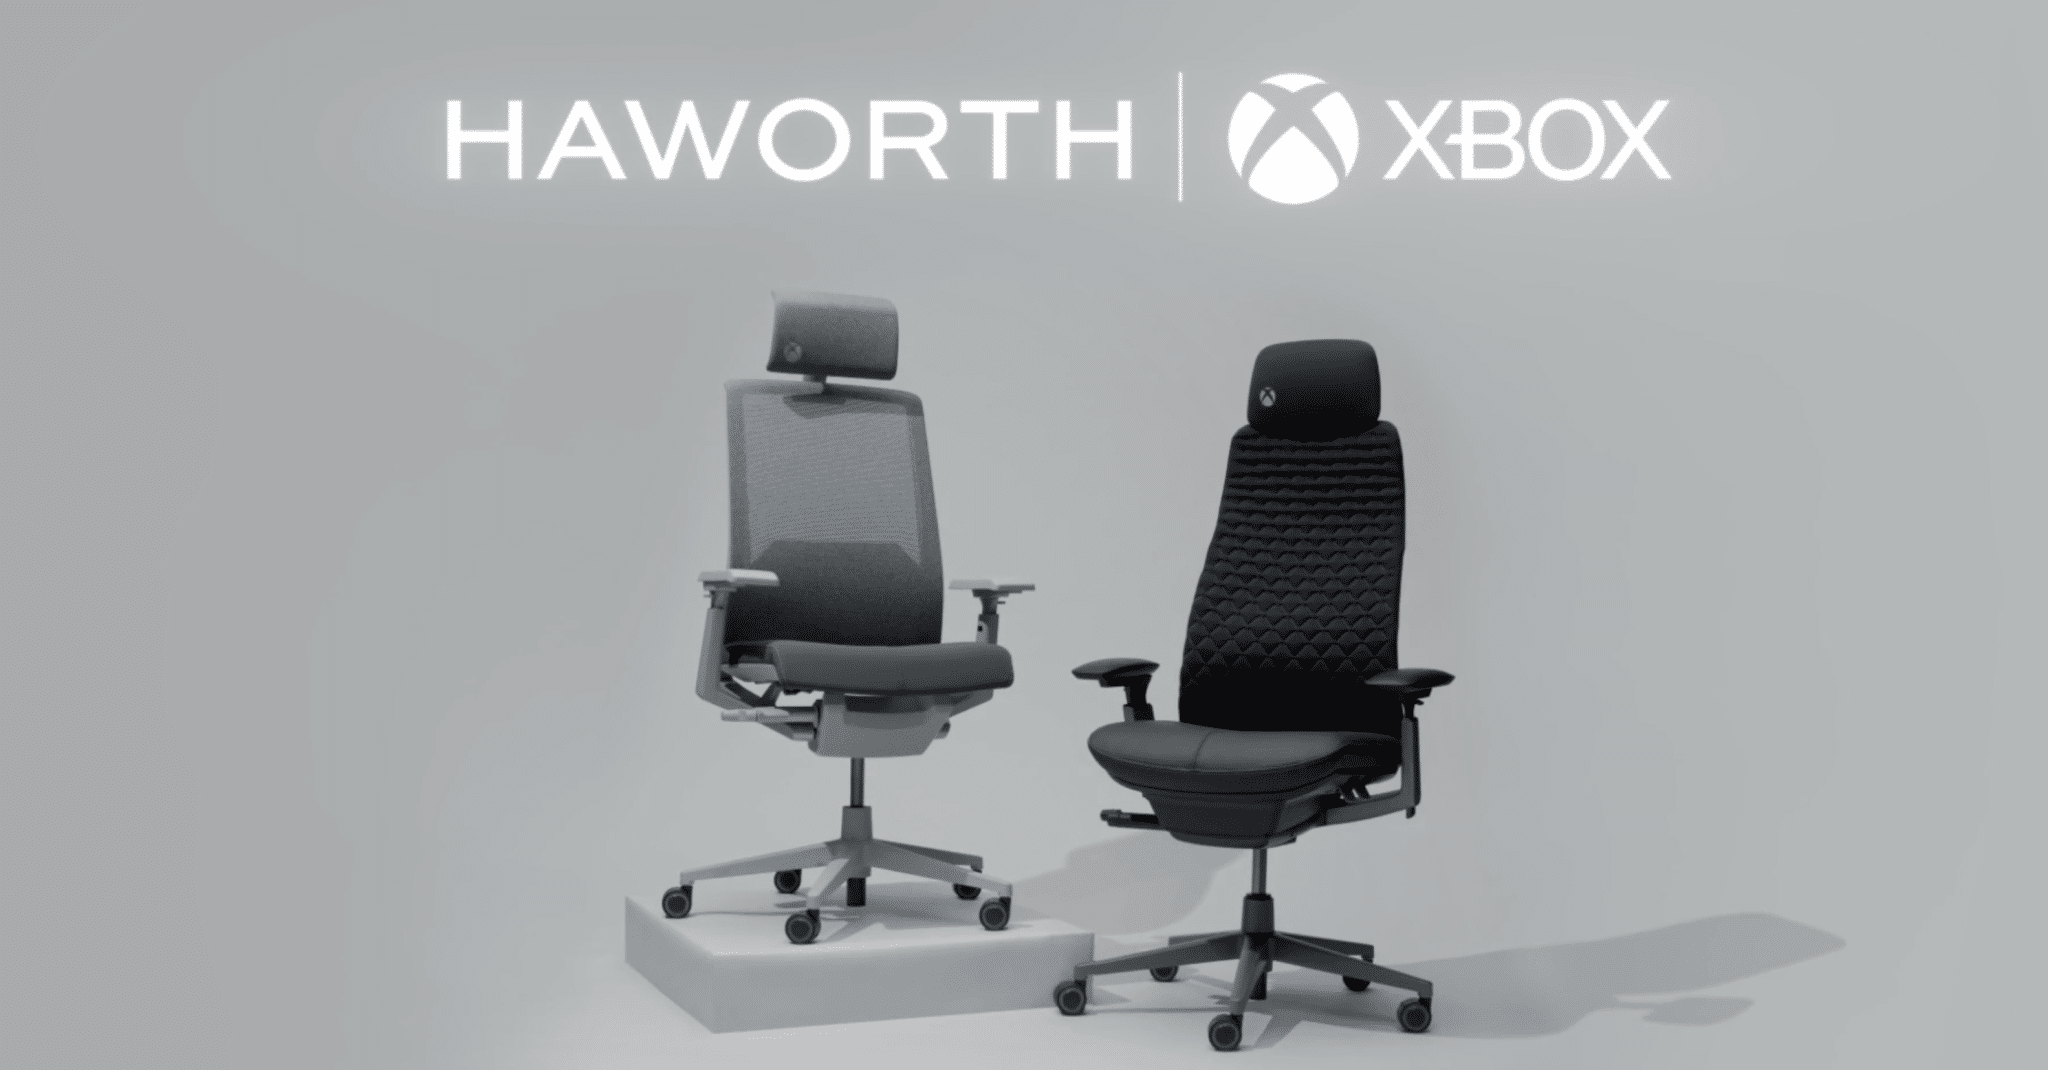 Xbox: in arrivo le sedie da gaming in collaborazione con Haworth 2